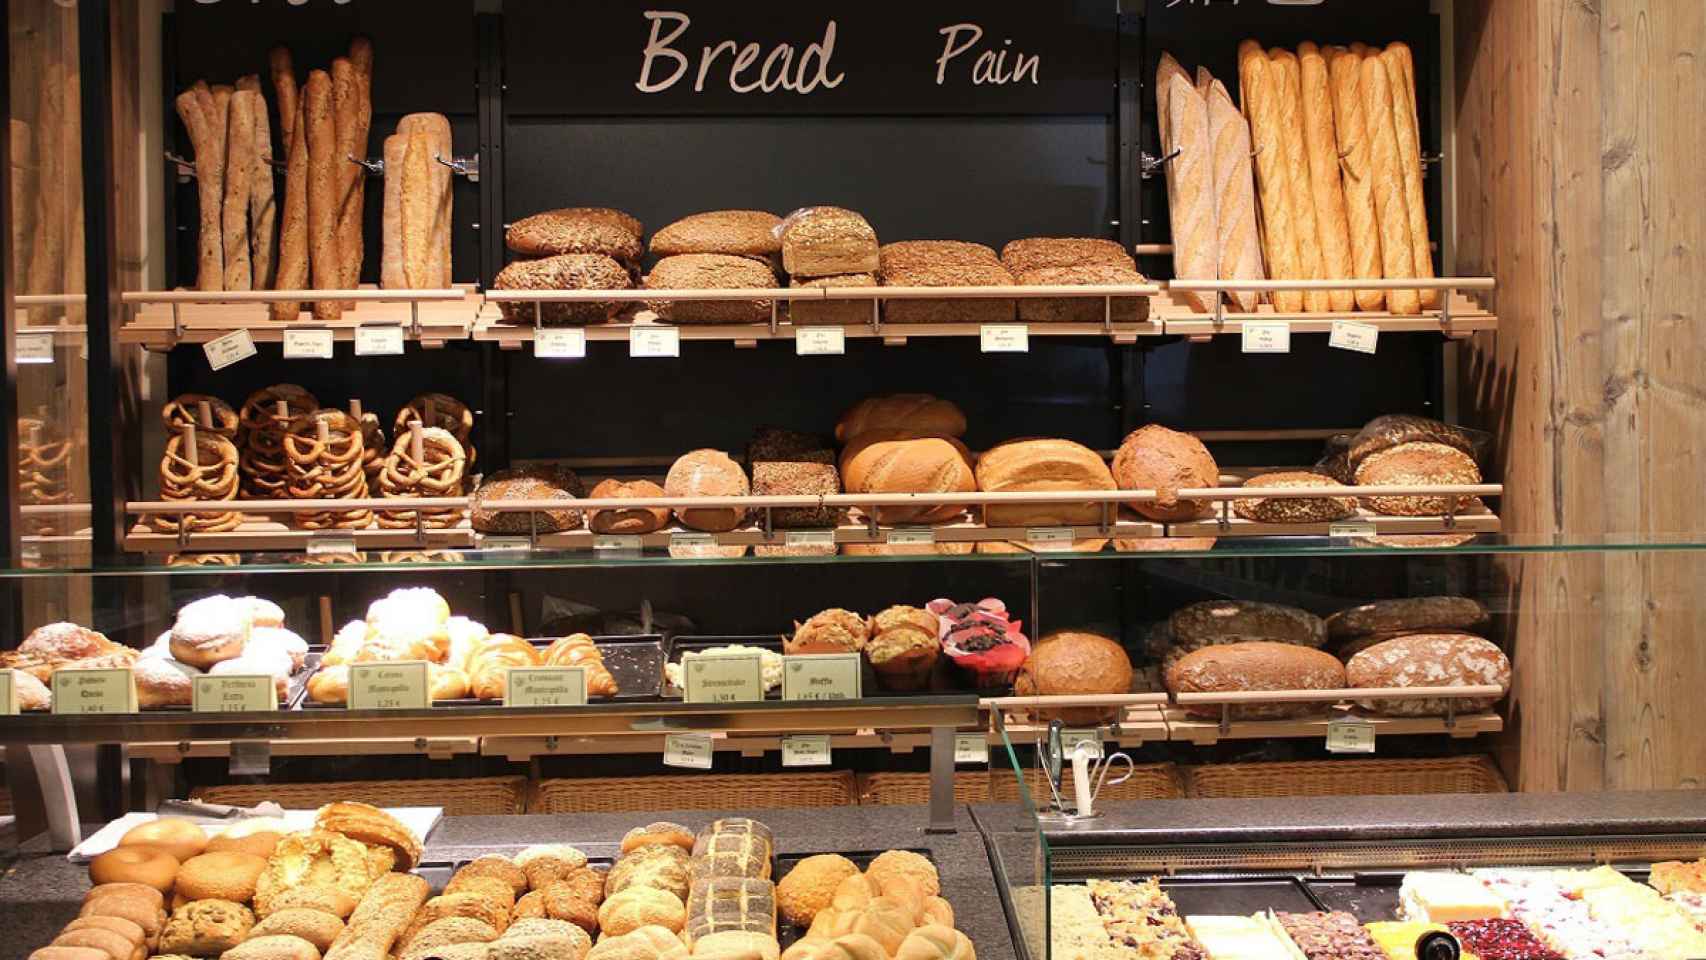 En este establecimiento podemos encontrar una amplia variedad de panes. /